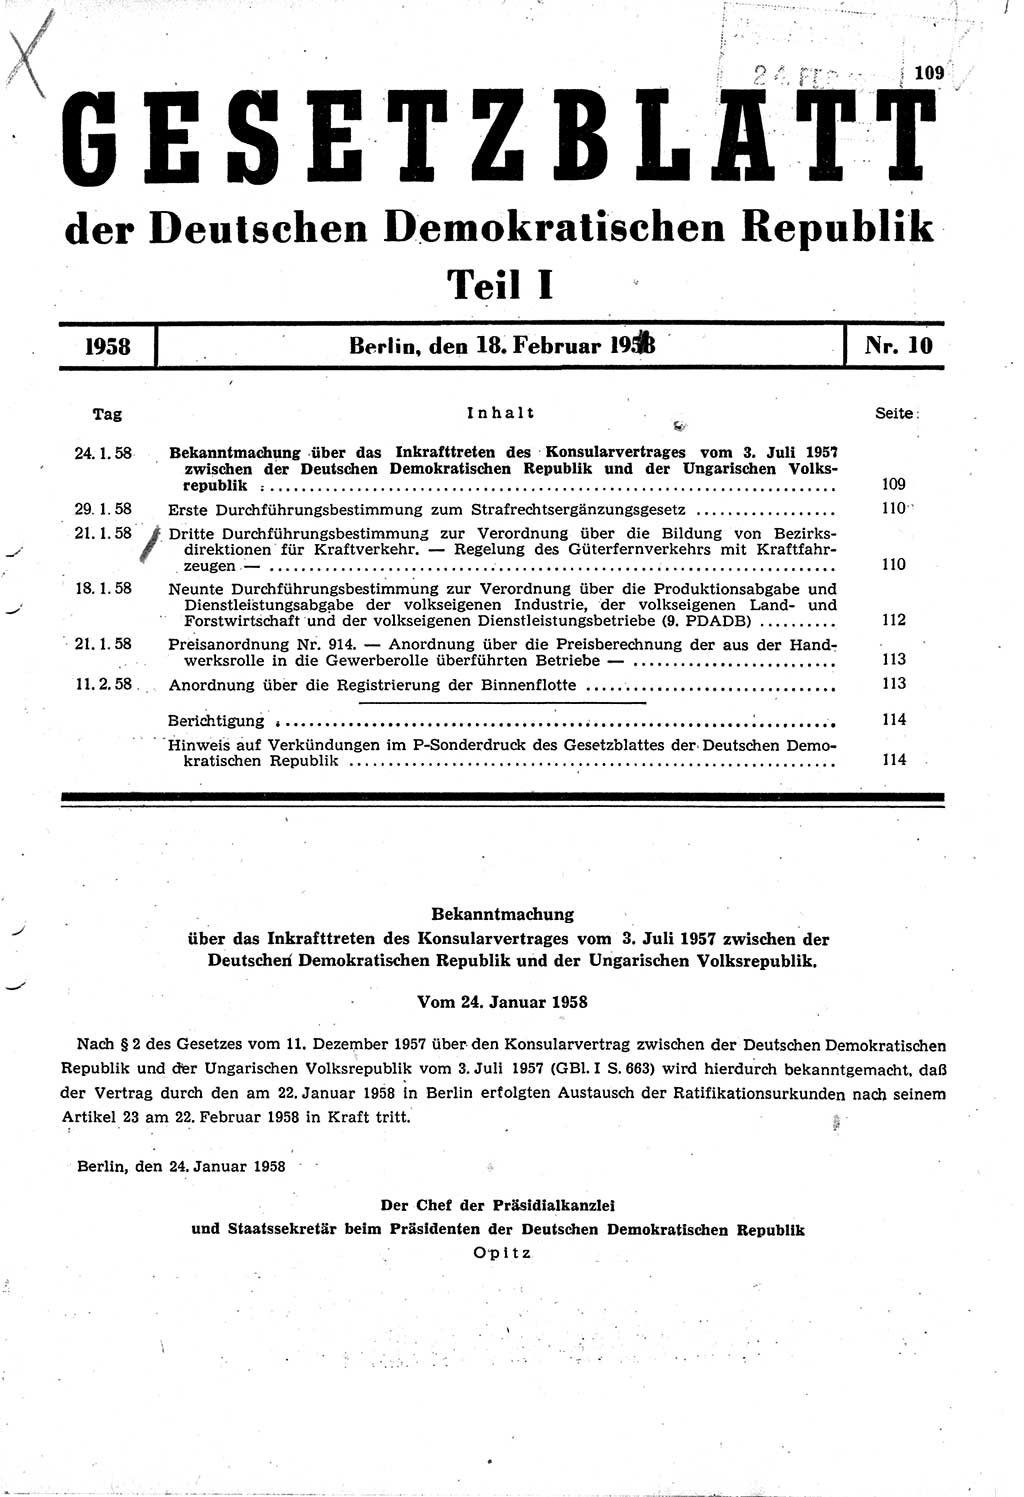 Gesetzblatt (GBl.) der Deutschen Demokratischen Republik (DDR) Teil Ⅰ 1958, Seite 109 (GBl. DDR Ⅰ 1958, S. 109)